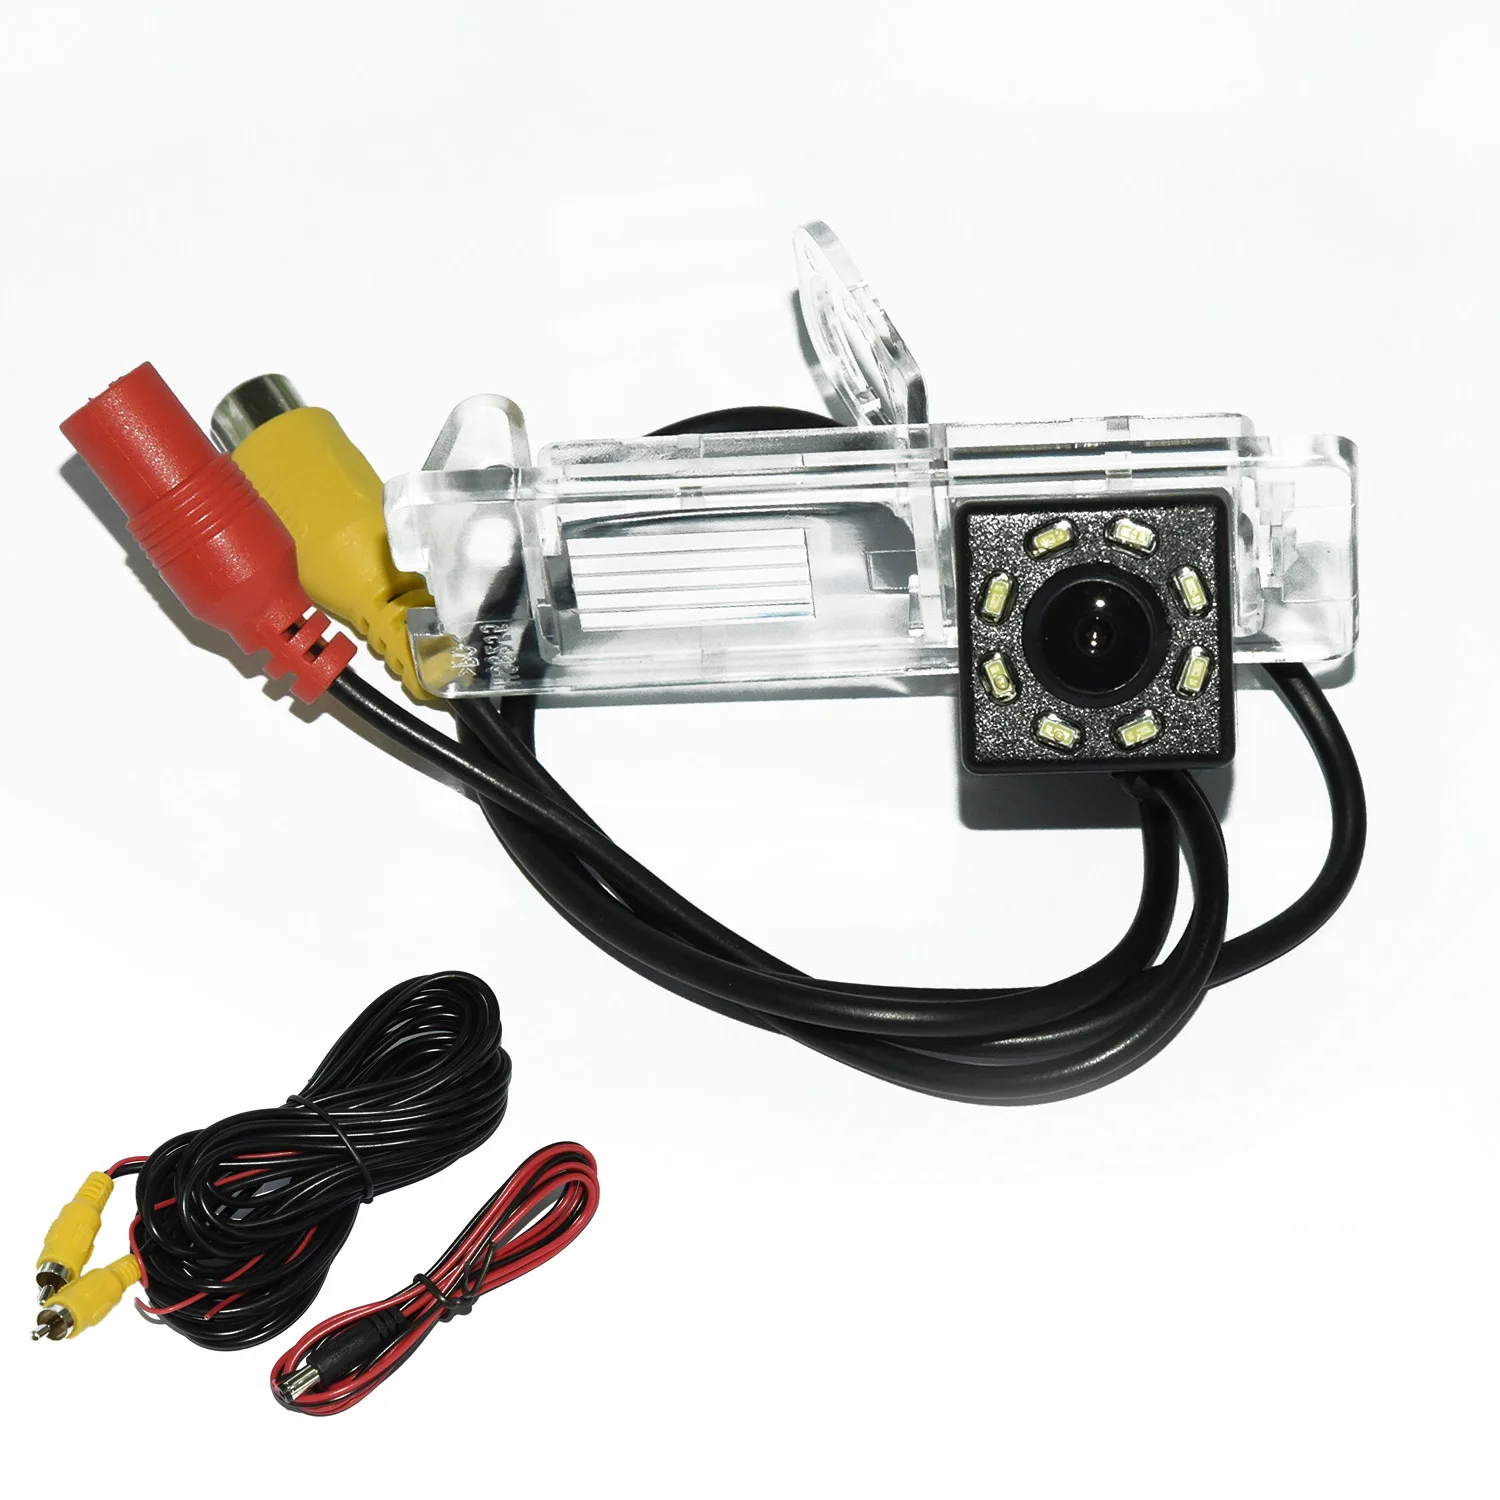 

Камера заднего вида с углом обзора 170 градусов HD для автомобиля Renault Clio 4 IV 2011 ~ 2012, парковочный видеомонитор, водонепроницаемый видеокабель RCA 6 м